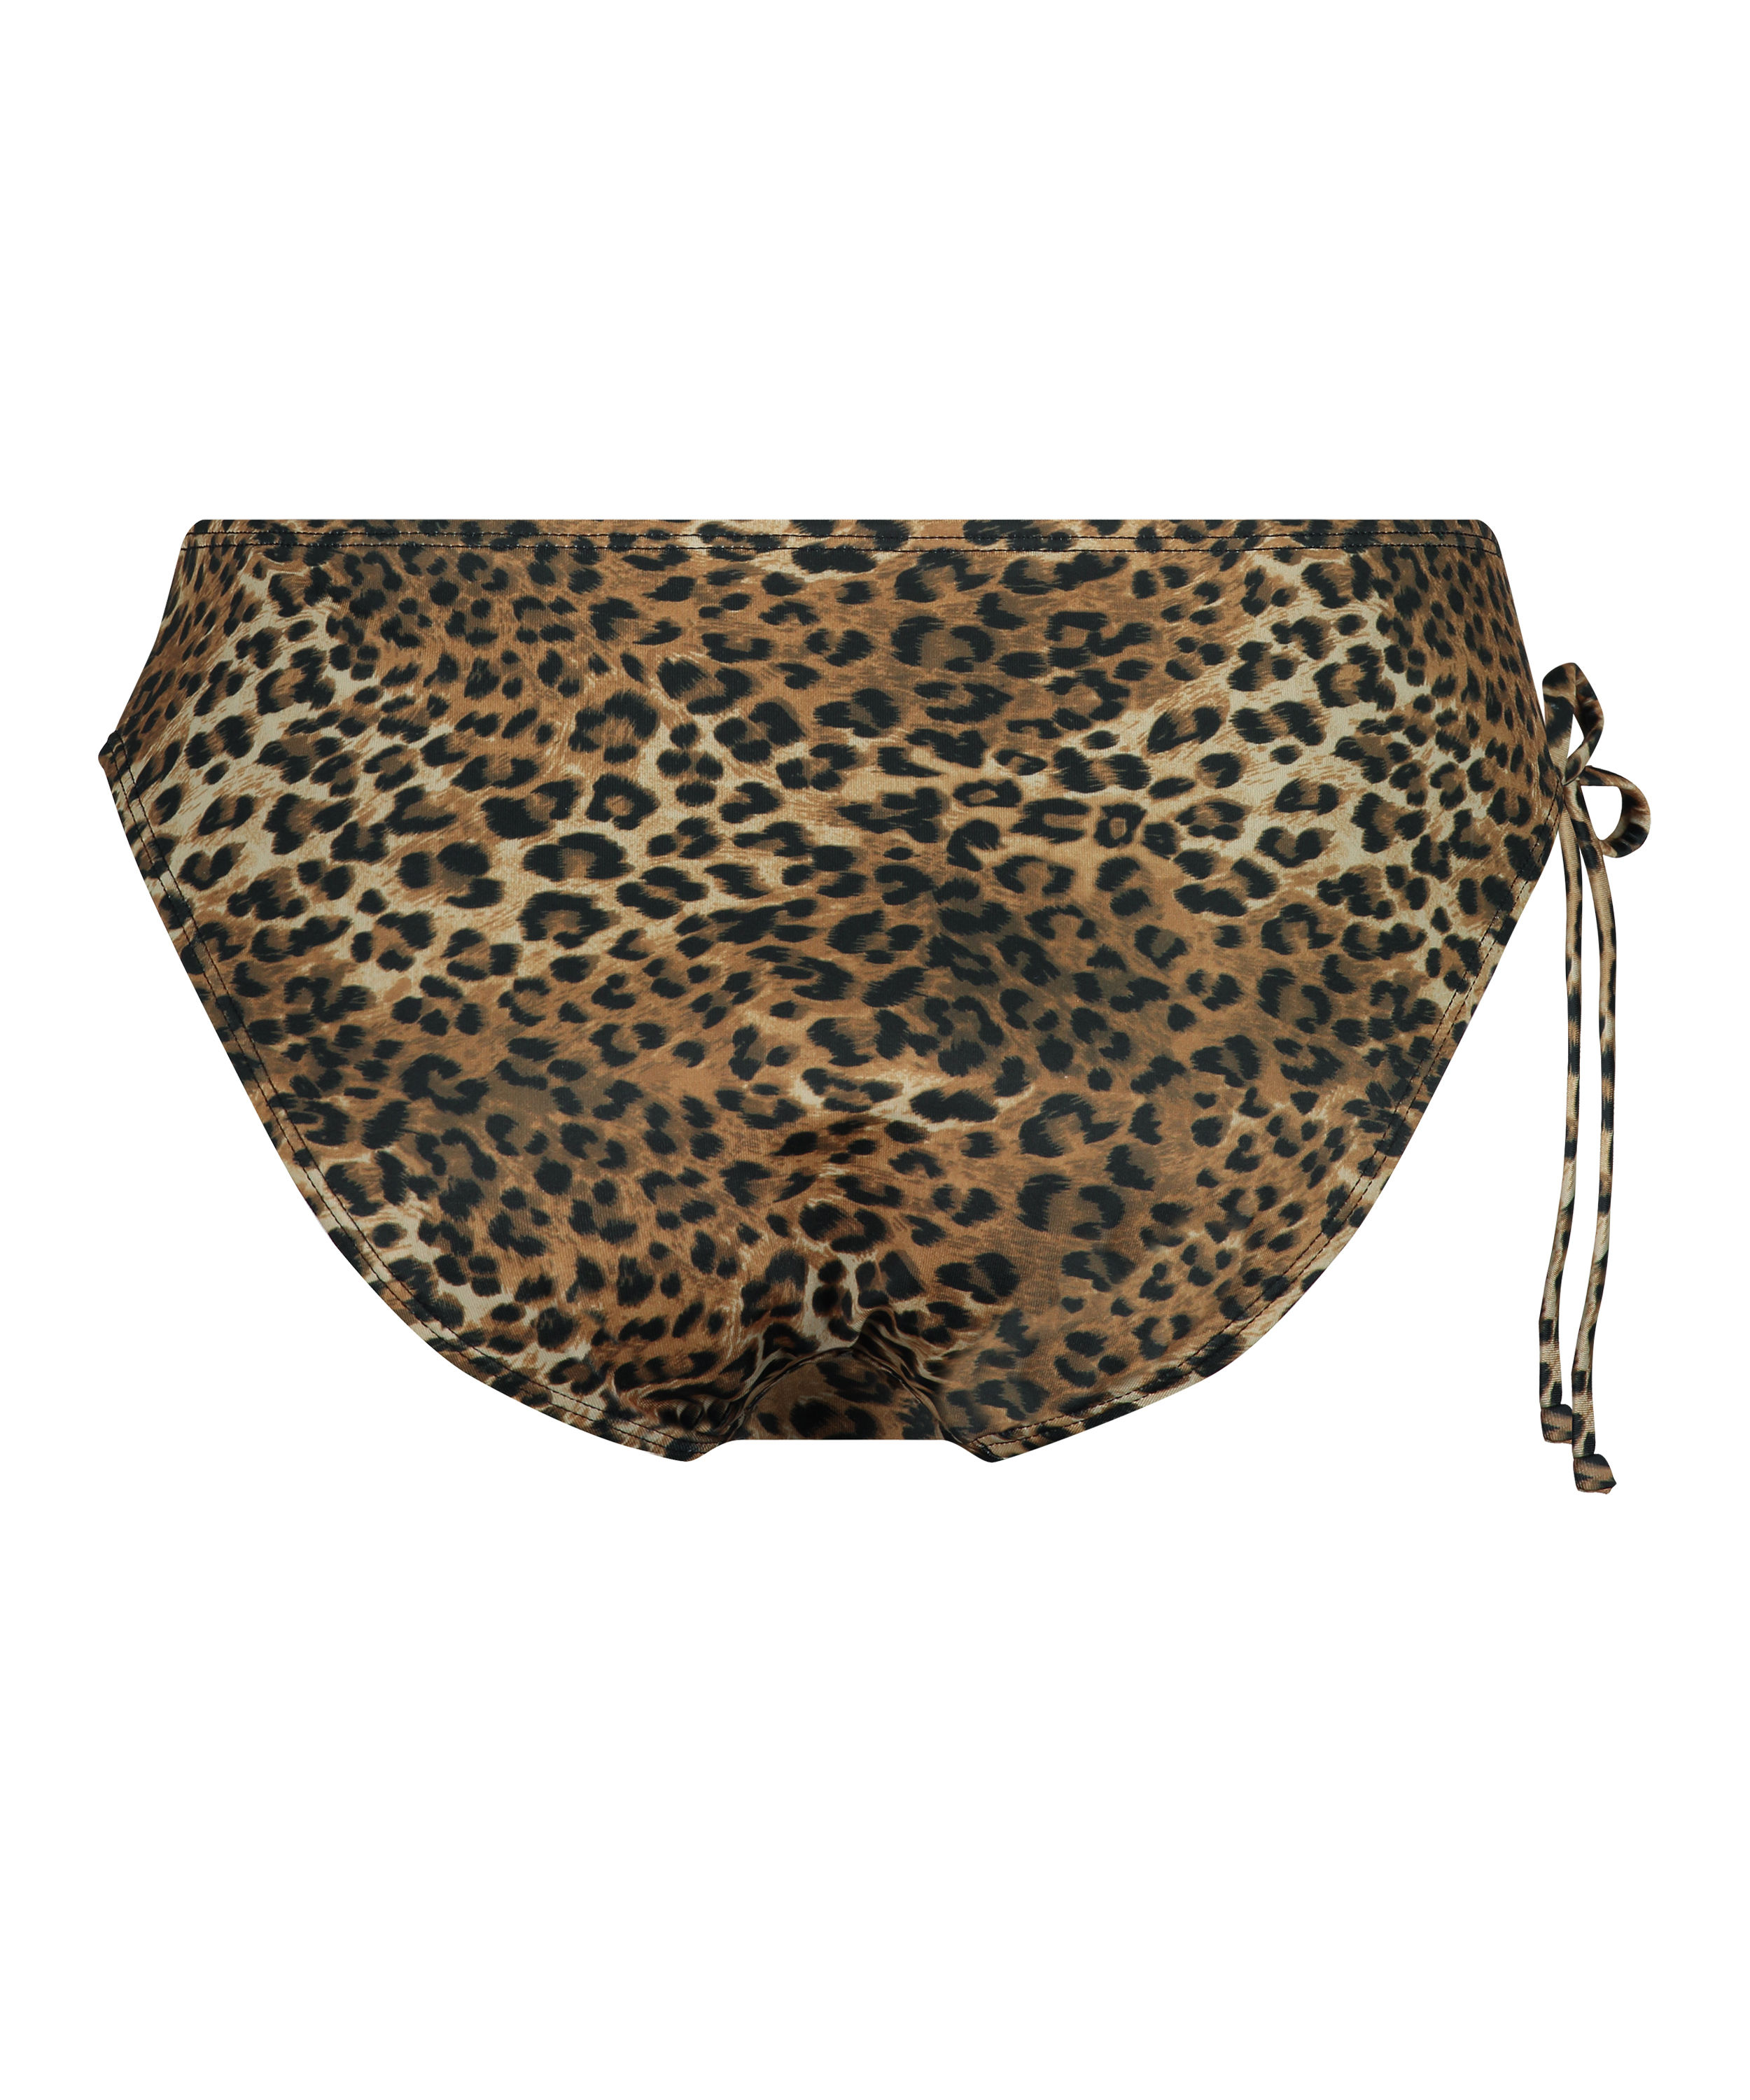 Leopard Bikini Bottoms, Brown, main